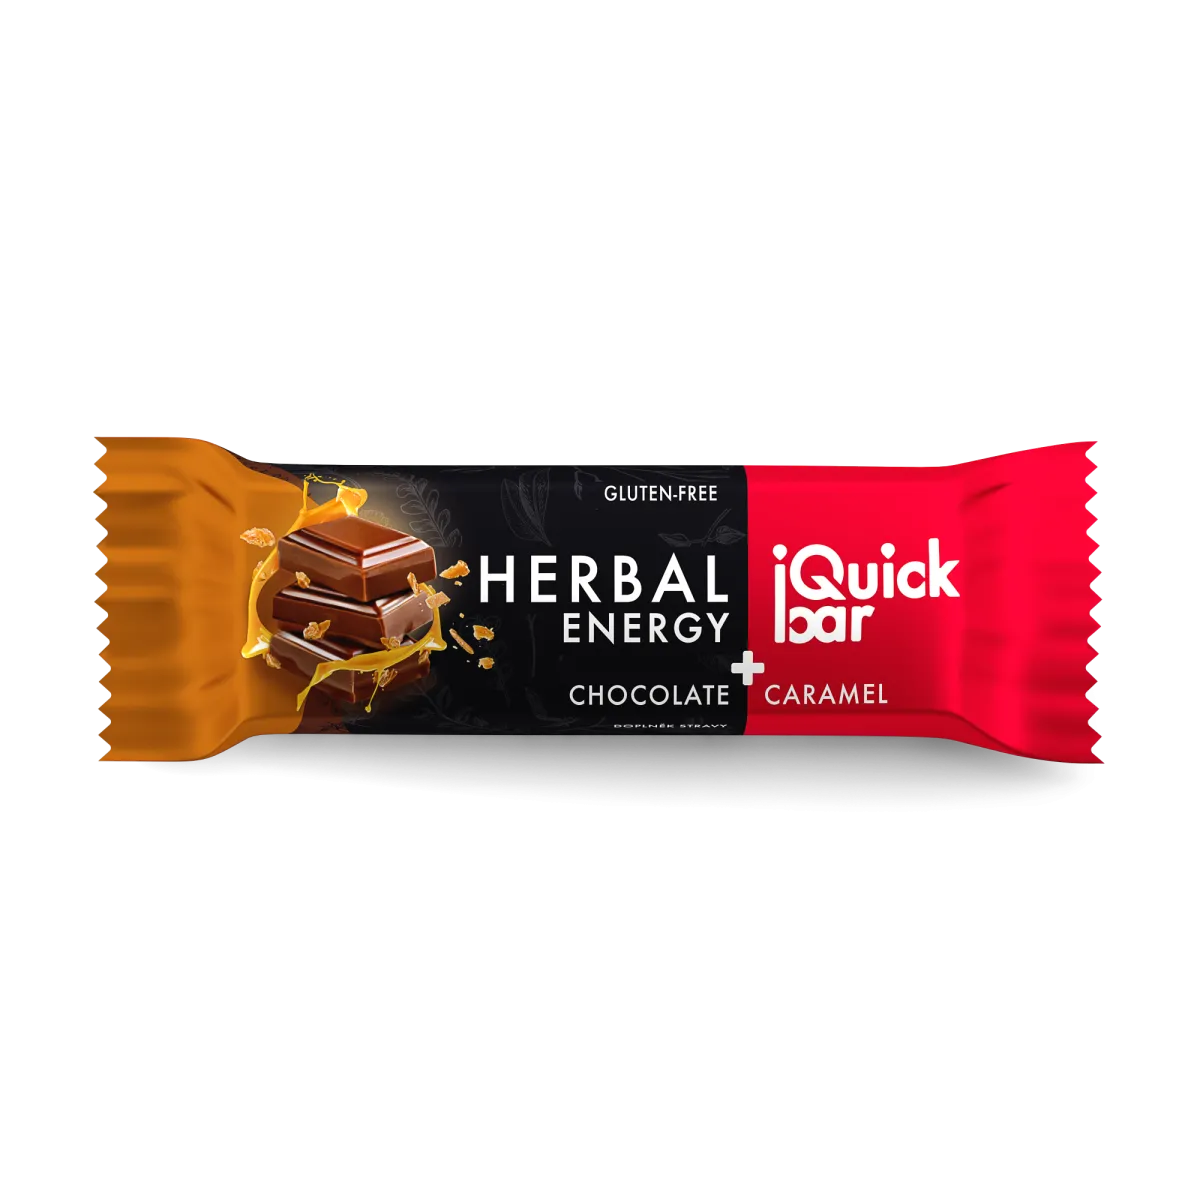 IQuick bar - csokoládé-karamell, gondolkodj okosan datolyarúd gyógynövényekkel